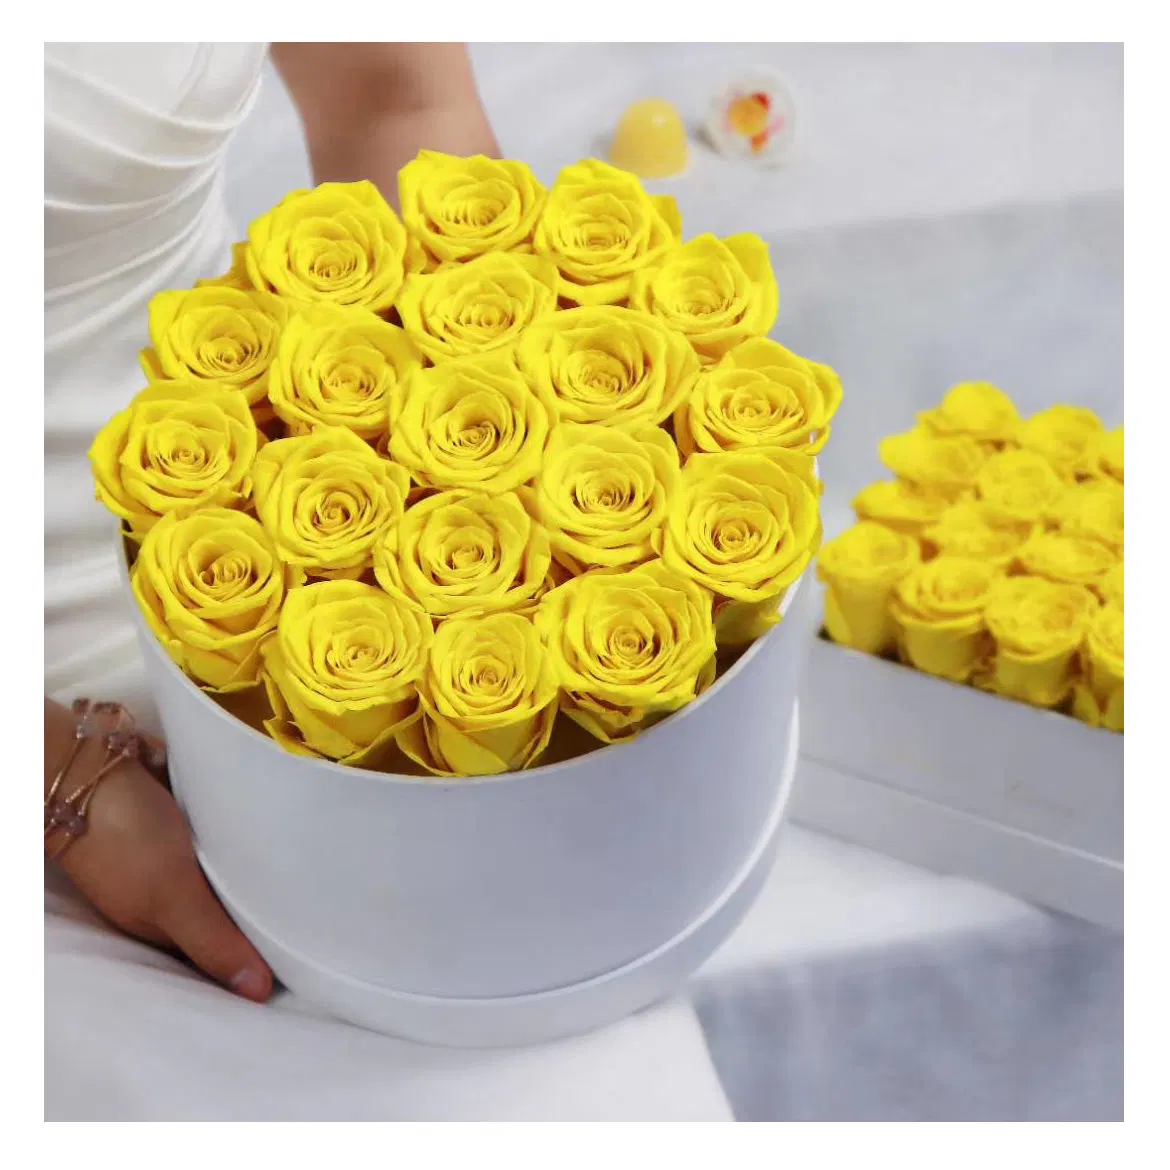 هدية عيد الحب الورود المحفوظة زهرة وردة زهرة اليفر الصناعية أزهار في صندوق لزينة عيد الحب